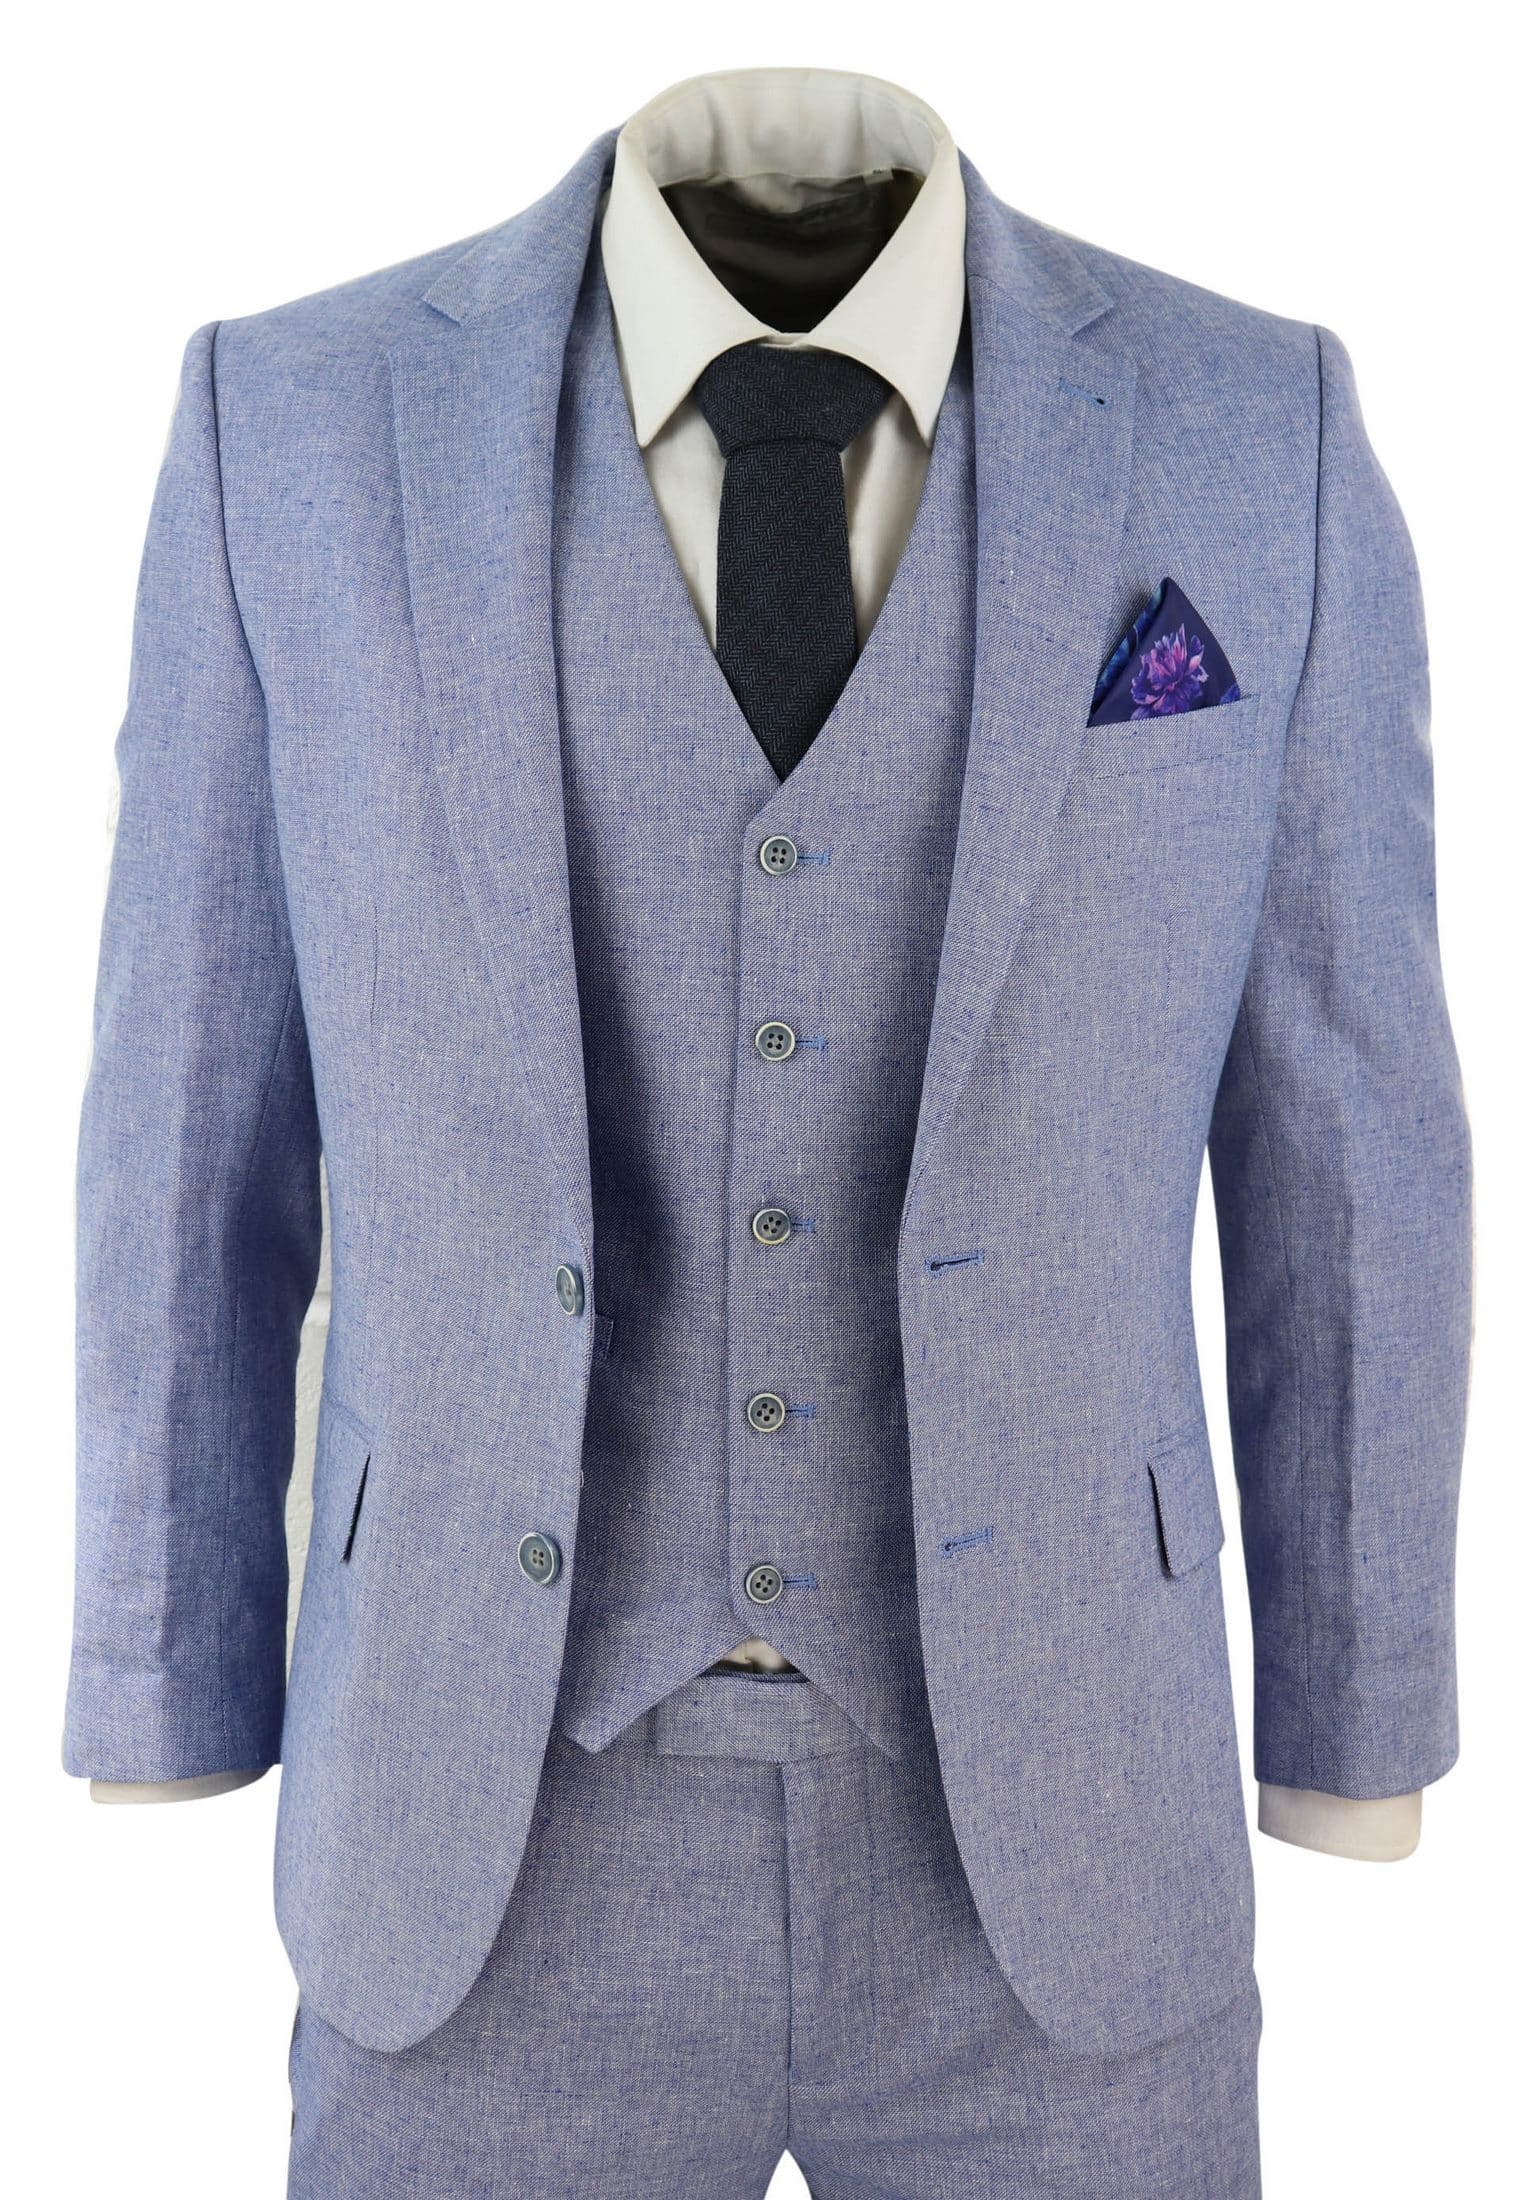 Men's Blue 3 Piece Linen Suit: Buy Online - Happy Gentleman